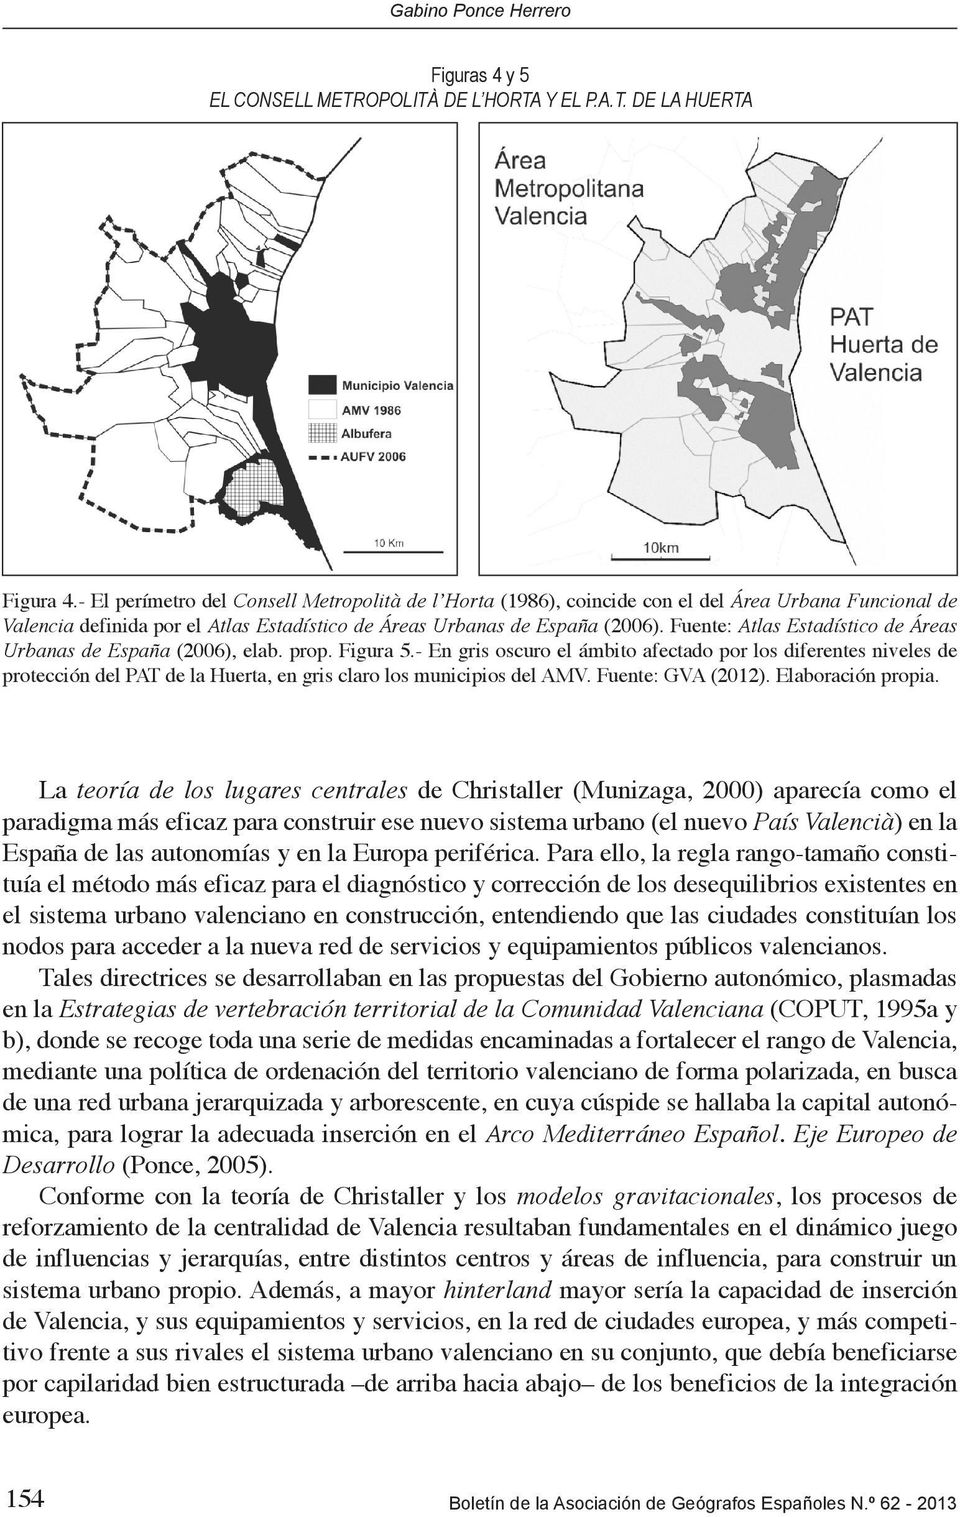 Fuente: Atlas Estadístico de Áreas Urbanas de España (2006), elab. prop. Figura 5.